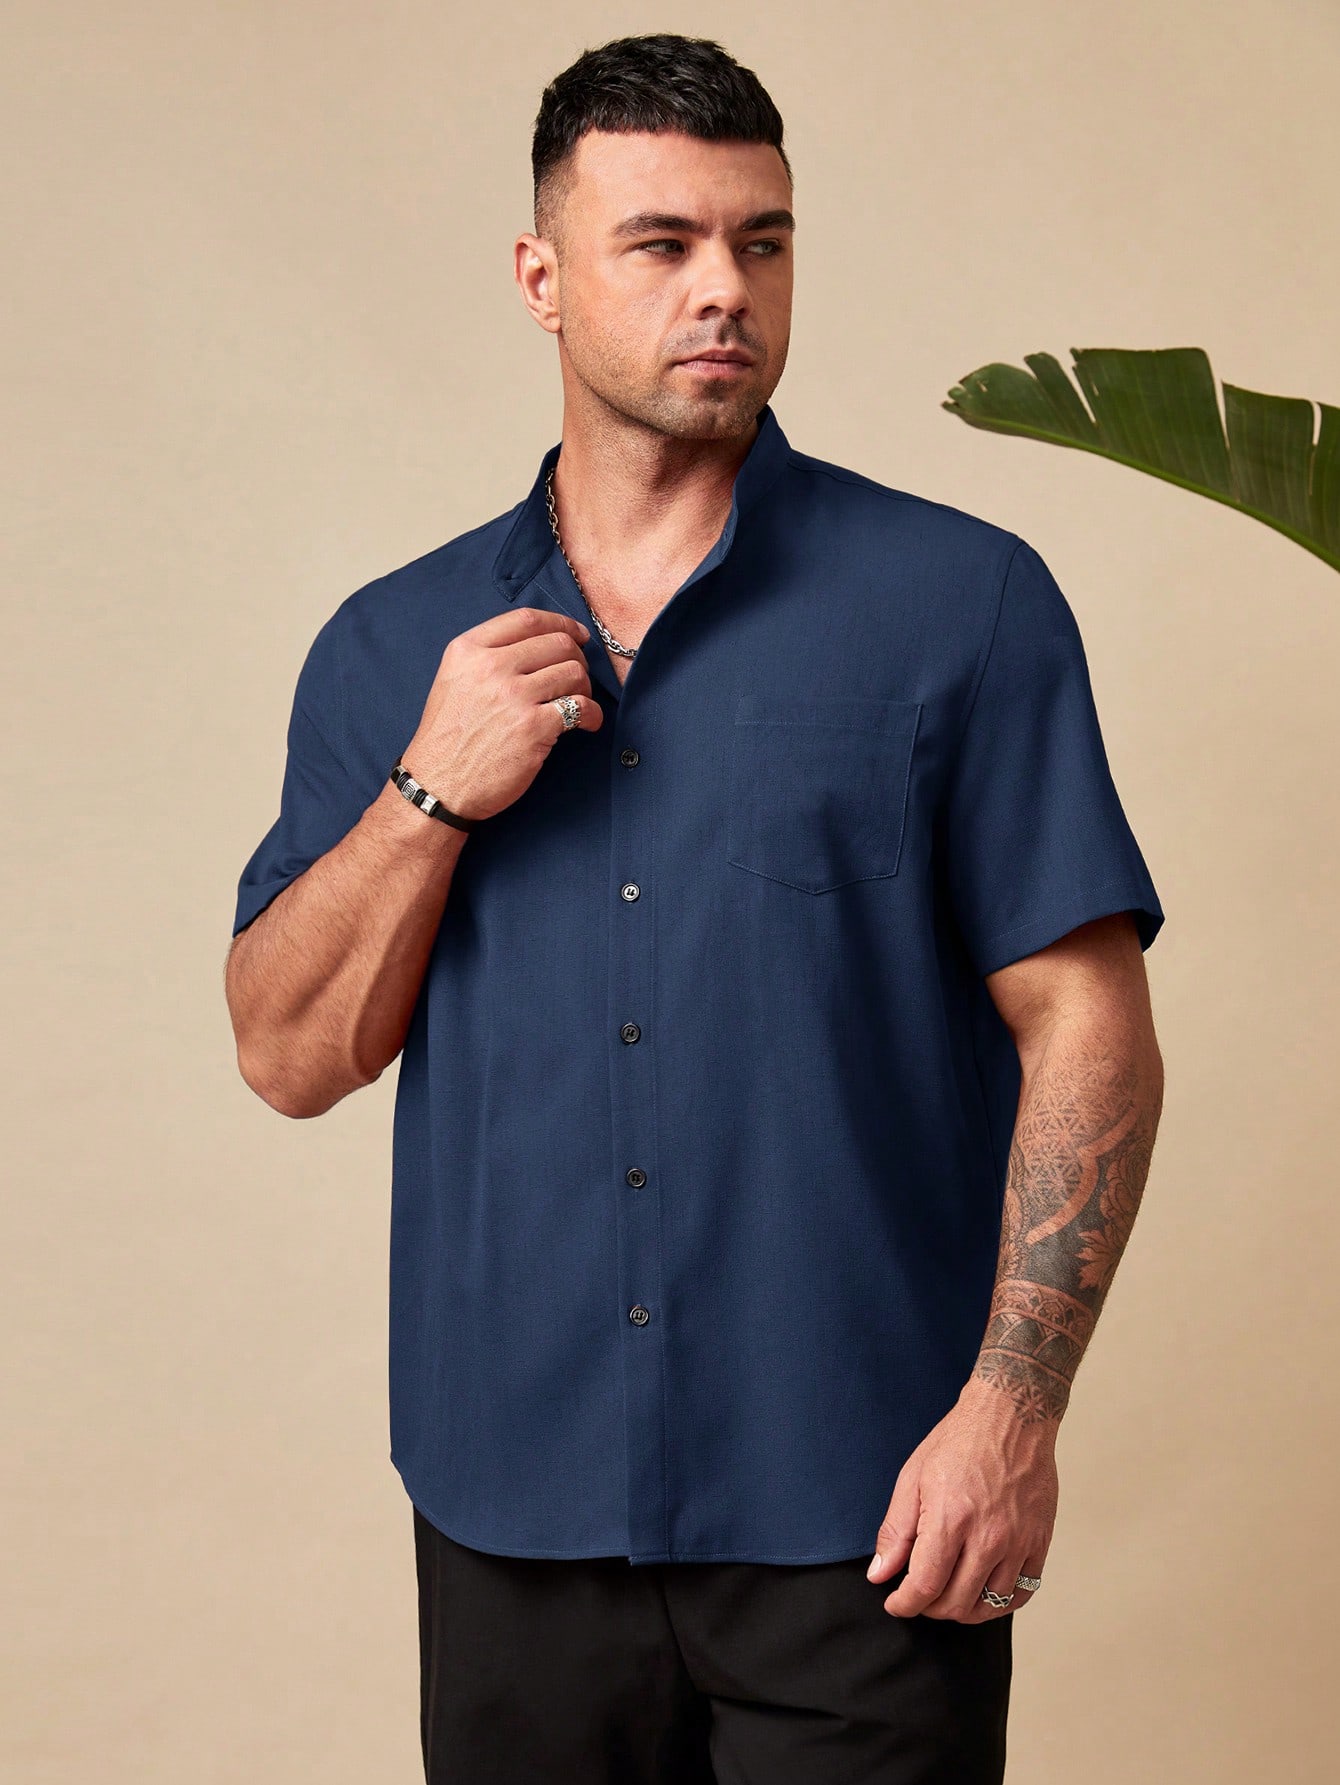 цена Manfinity Homme Мужская рубашка свободного кроя больших размеров на пуговицах с короткими рукавами и накладными карманами больших размеров, темно-синий